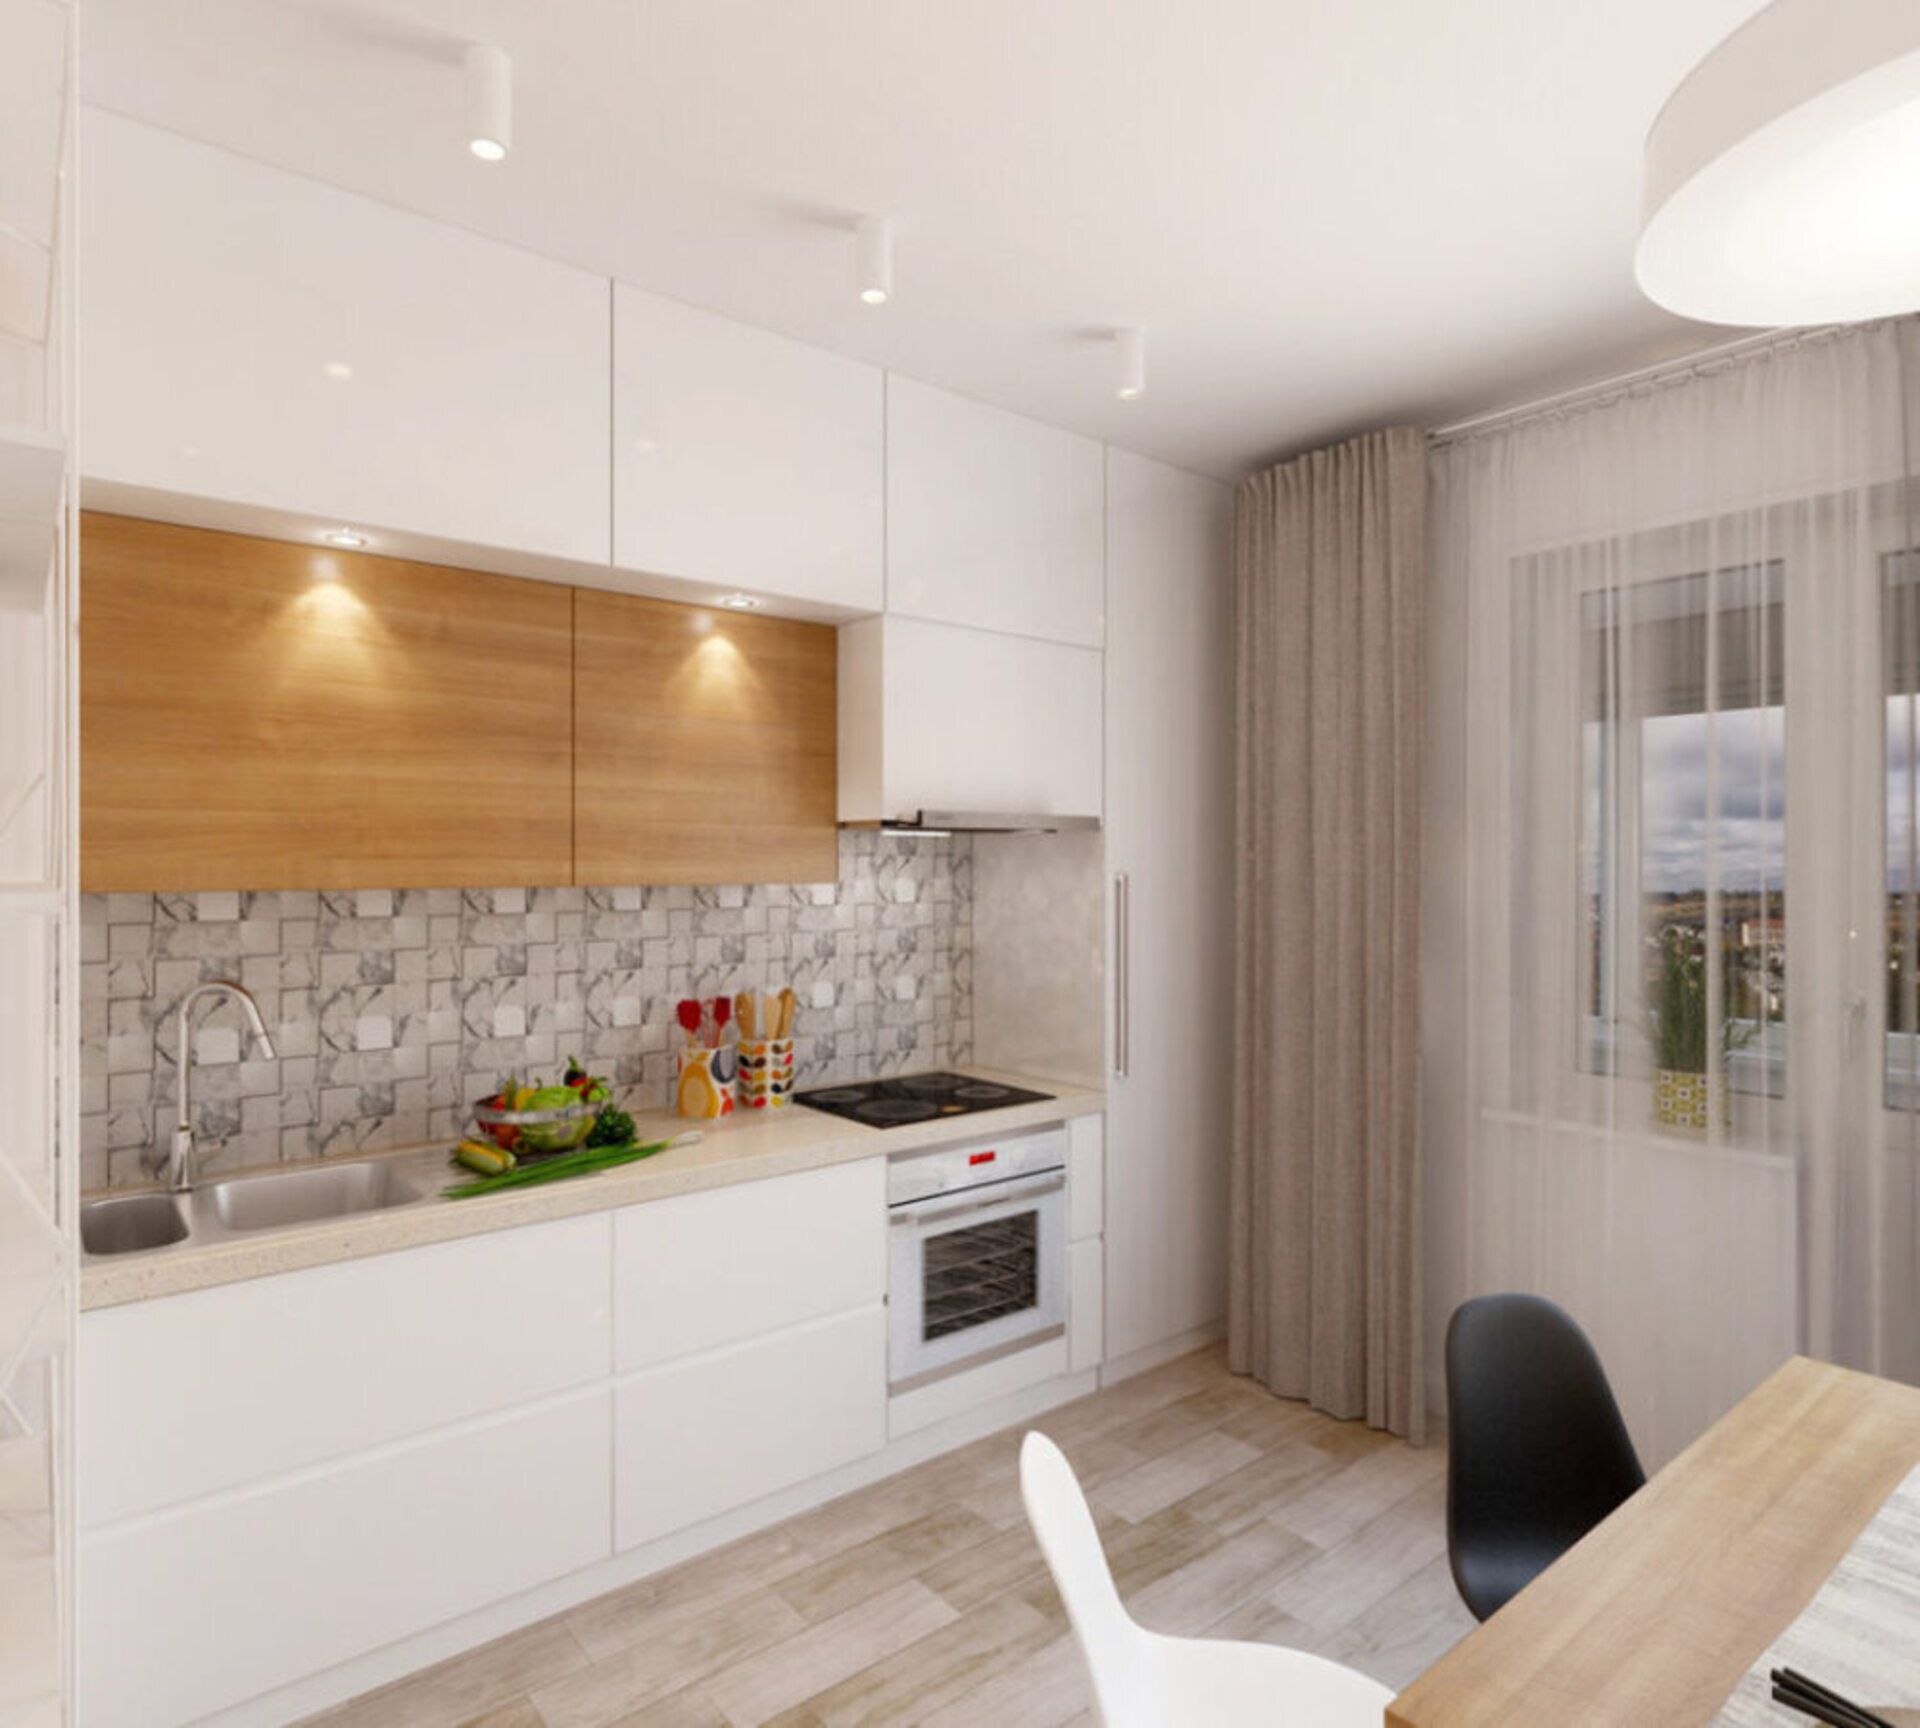 Дизайн кухни-гостиной: объединяем зоны правильно! Фото проектов